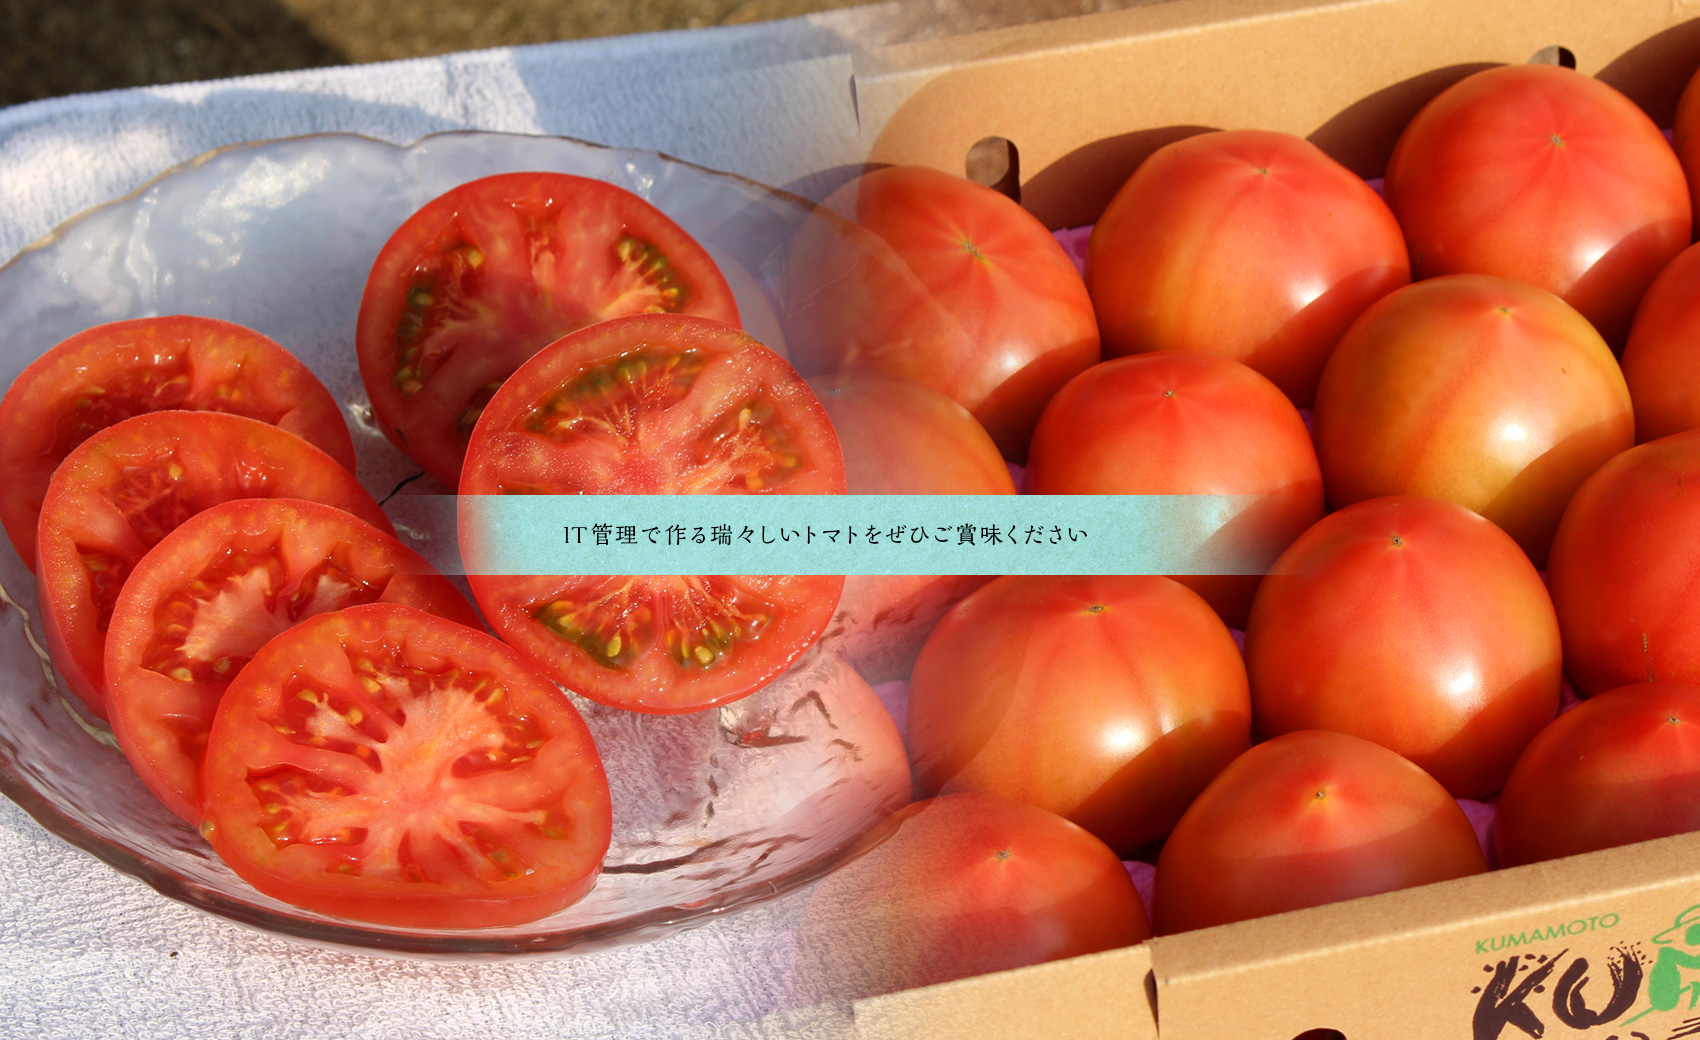 IT管理で作る瑞々しいトマトをぜひご賞味ください